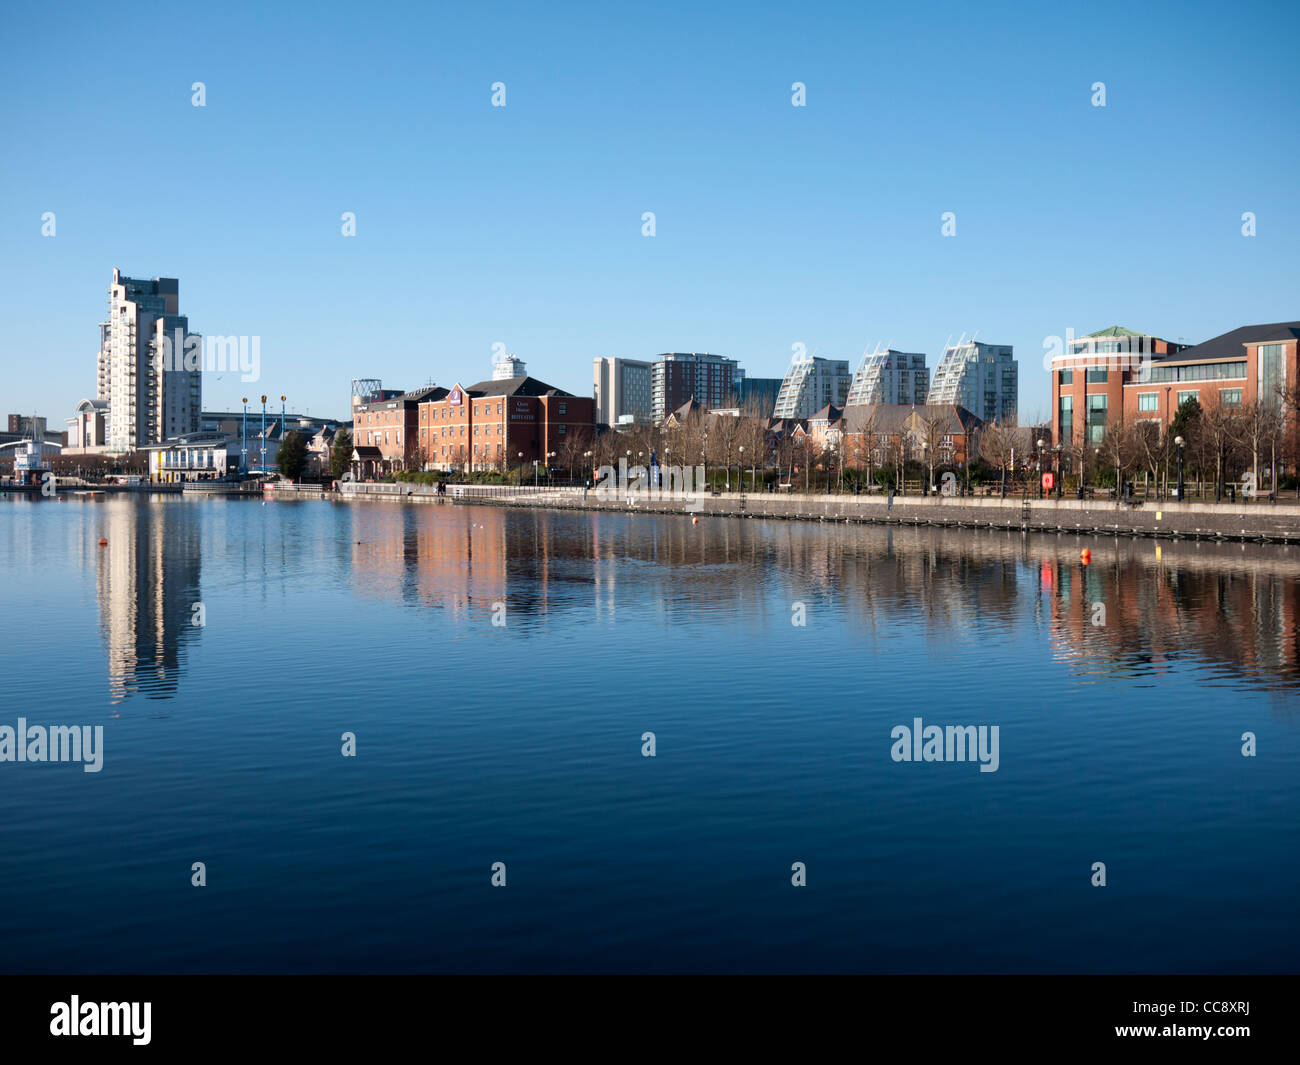 Salford Quays Manchester Inghilterra England Regno Unito. Vedute di edifici moderni su acqua in una limpida giornata di sole Foto Stock